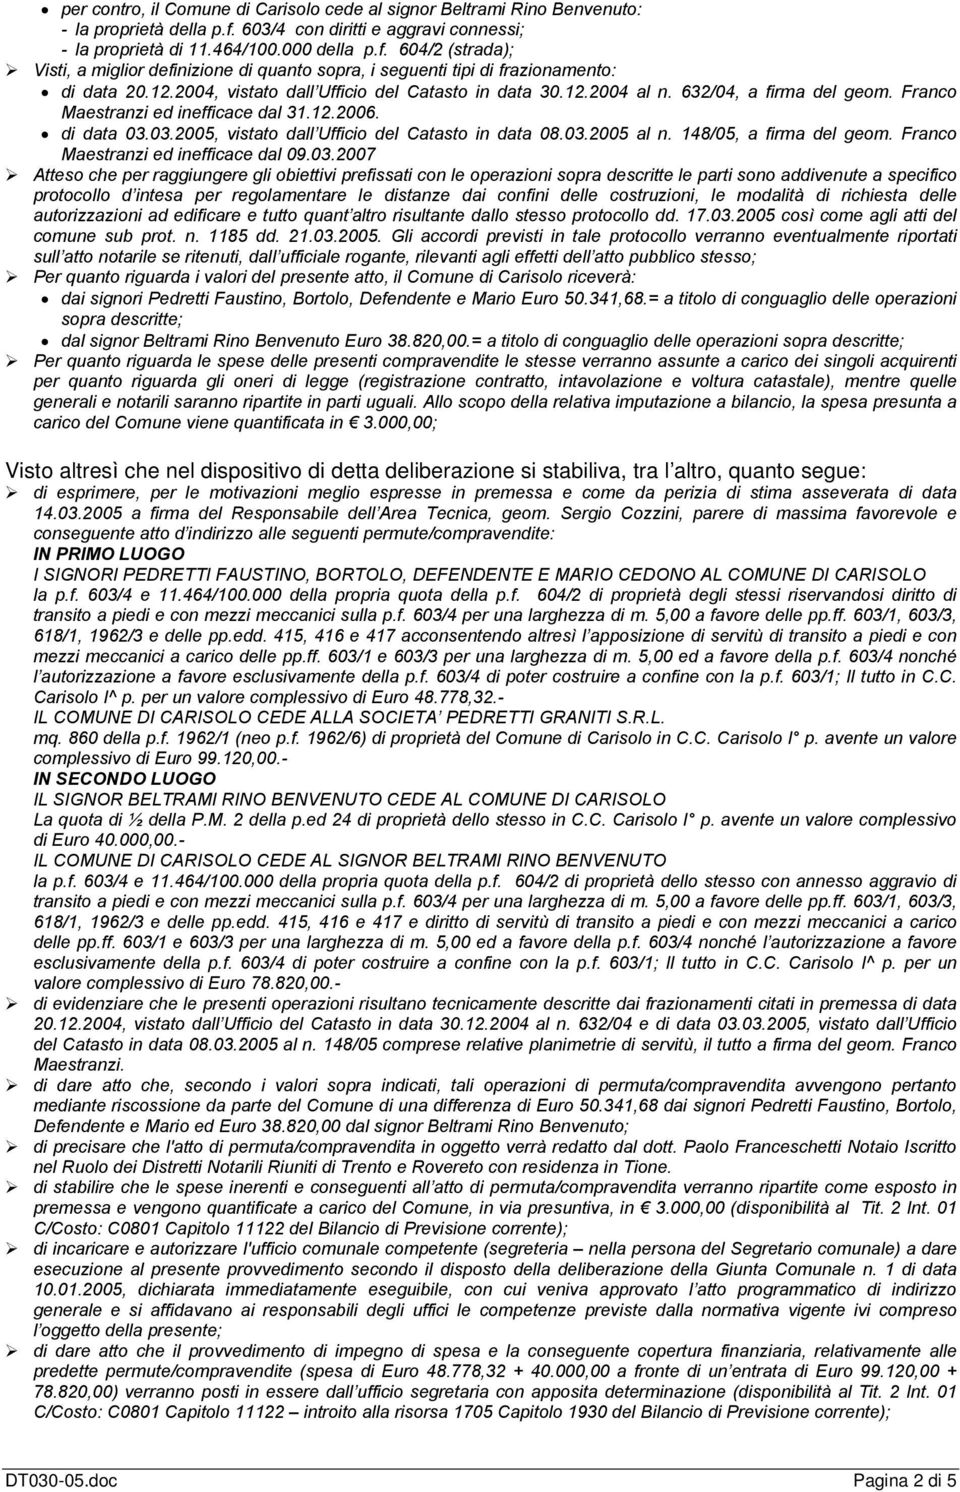 2004, vistato dall Ufficio del Catasto in data 30.12.2004 al n. 632/04, a firma del geom. Franco Maestranzi ed inefficace dal 31.12.2006. di data 03.03.2005, vistato dall Ufficio del Catasto in data 08.